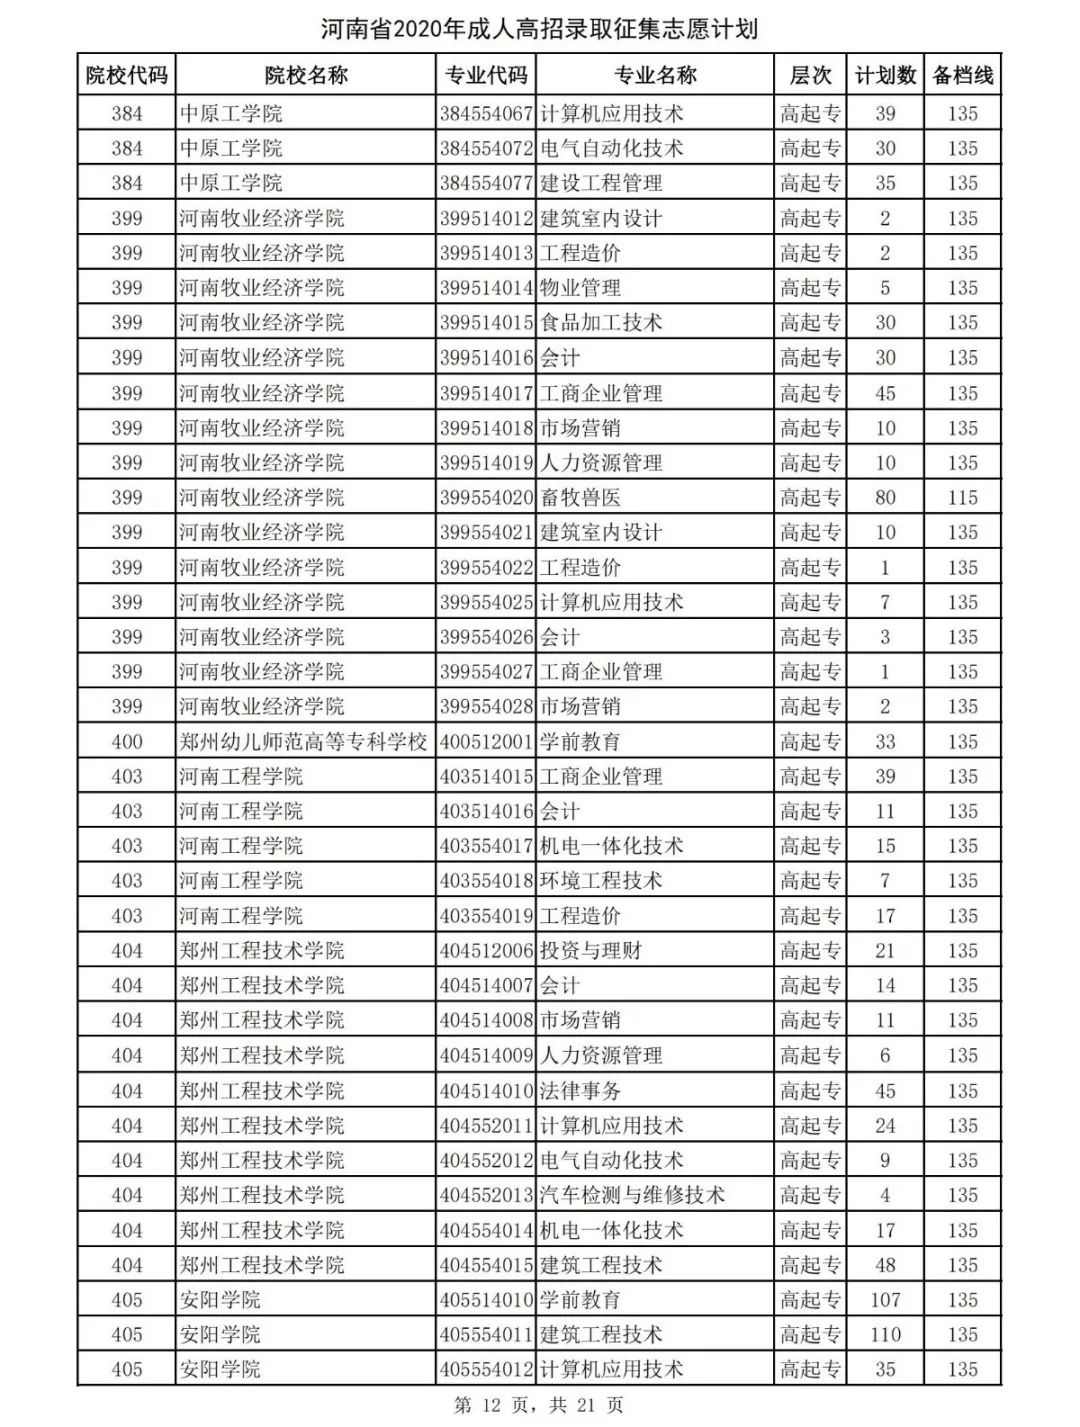 提个醒！河南2020成人高招征集志愿名单发布 今日18:00截止填报